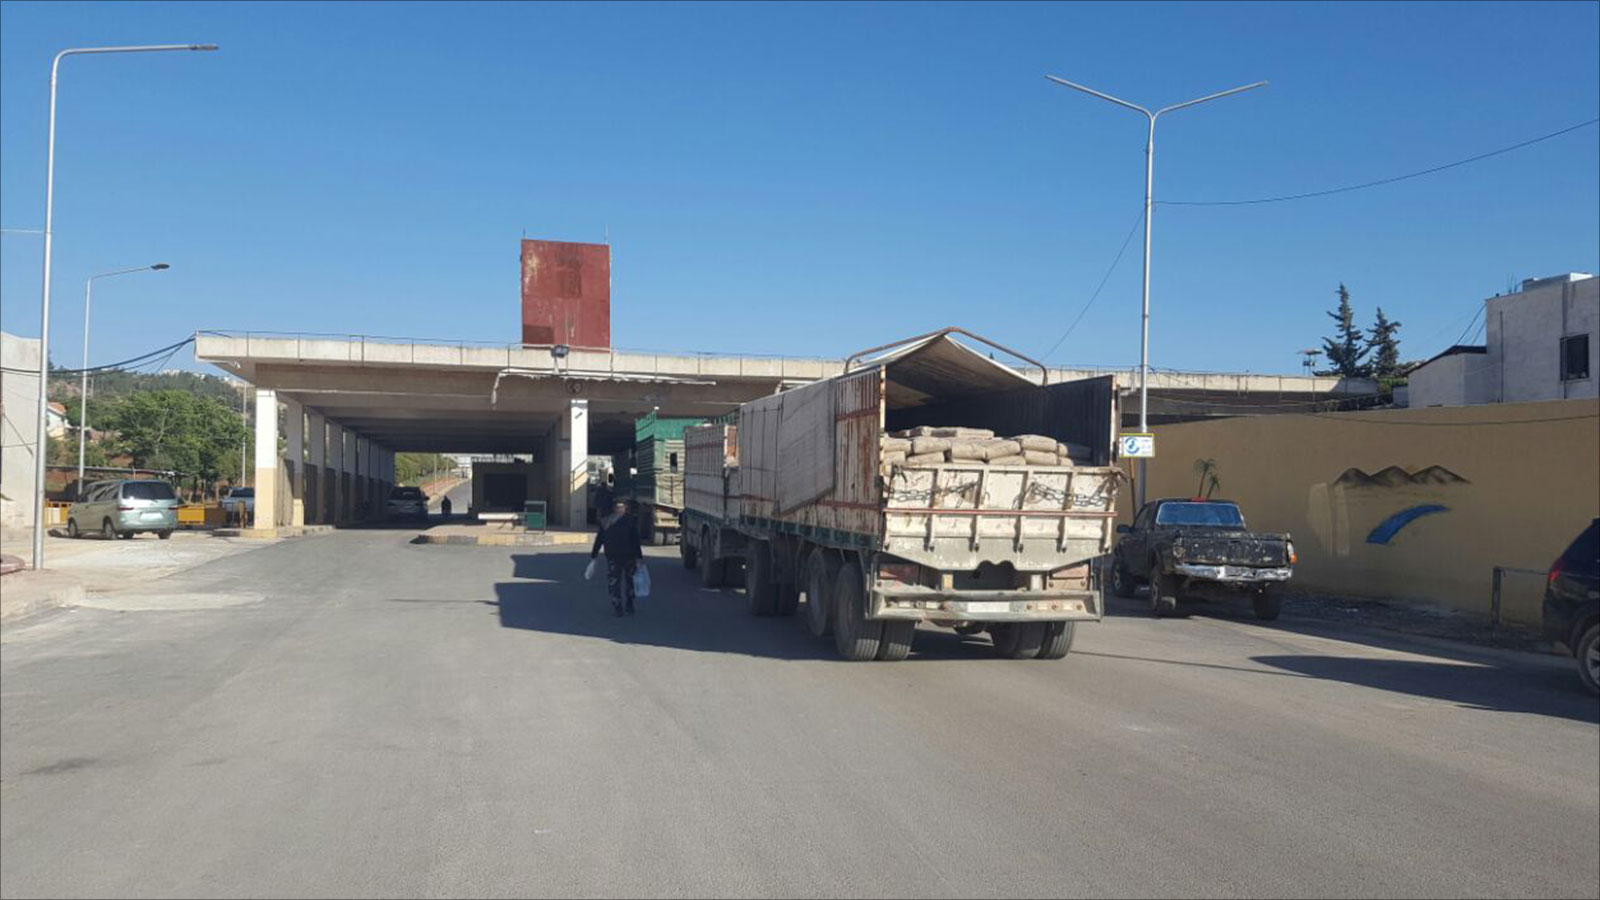 ‪معبر باب الهوى بين تركيا وسوريا خضع مؤخرا لسيطرة هيئة تحرير الشام‬ (الجزيرة)